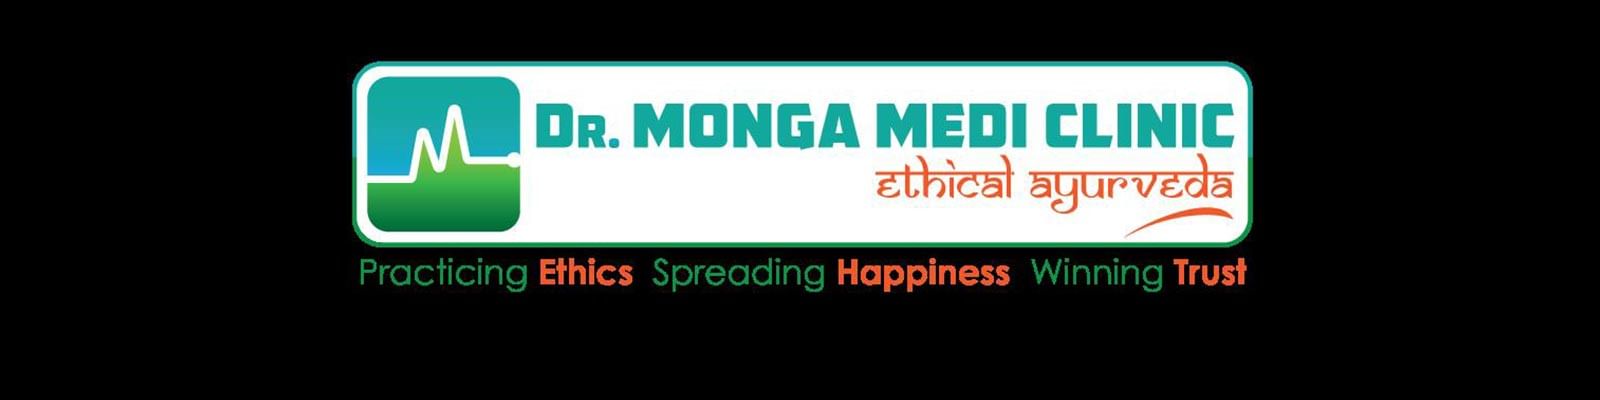 Dr. Monga Medi Clinic - Gurgaon